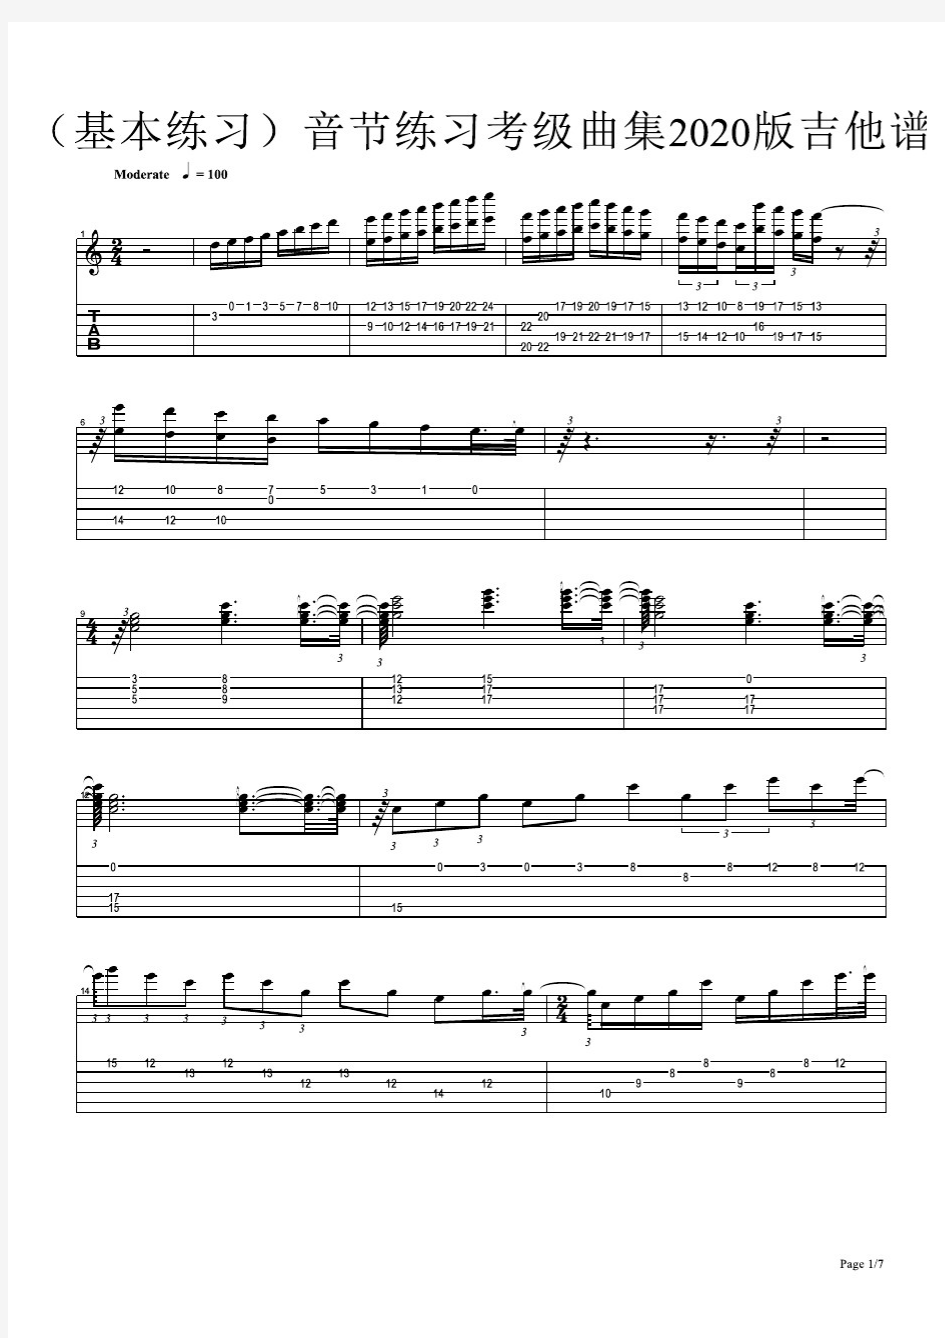 (基本练习)音节练习考级曲集2020版 初学者 吉他谱